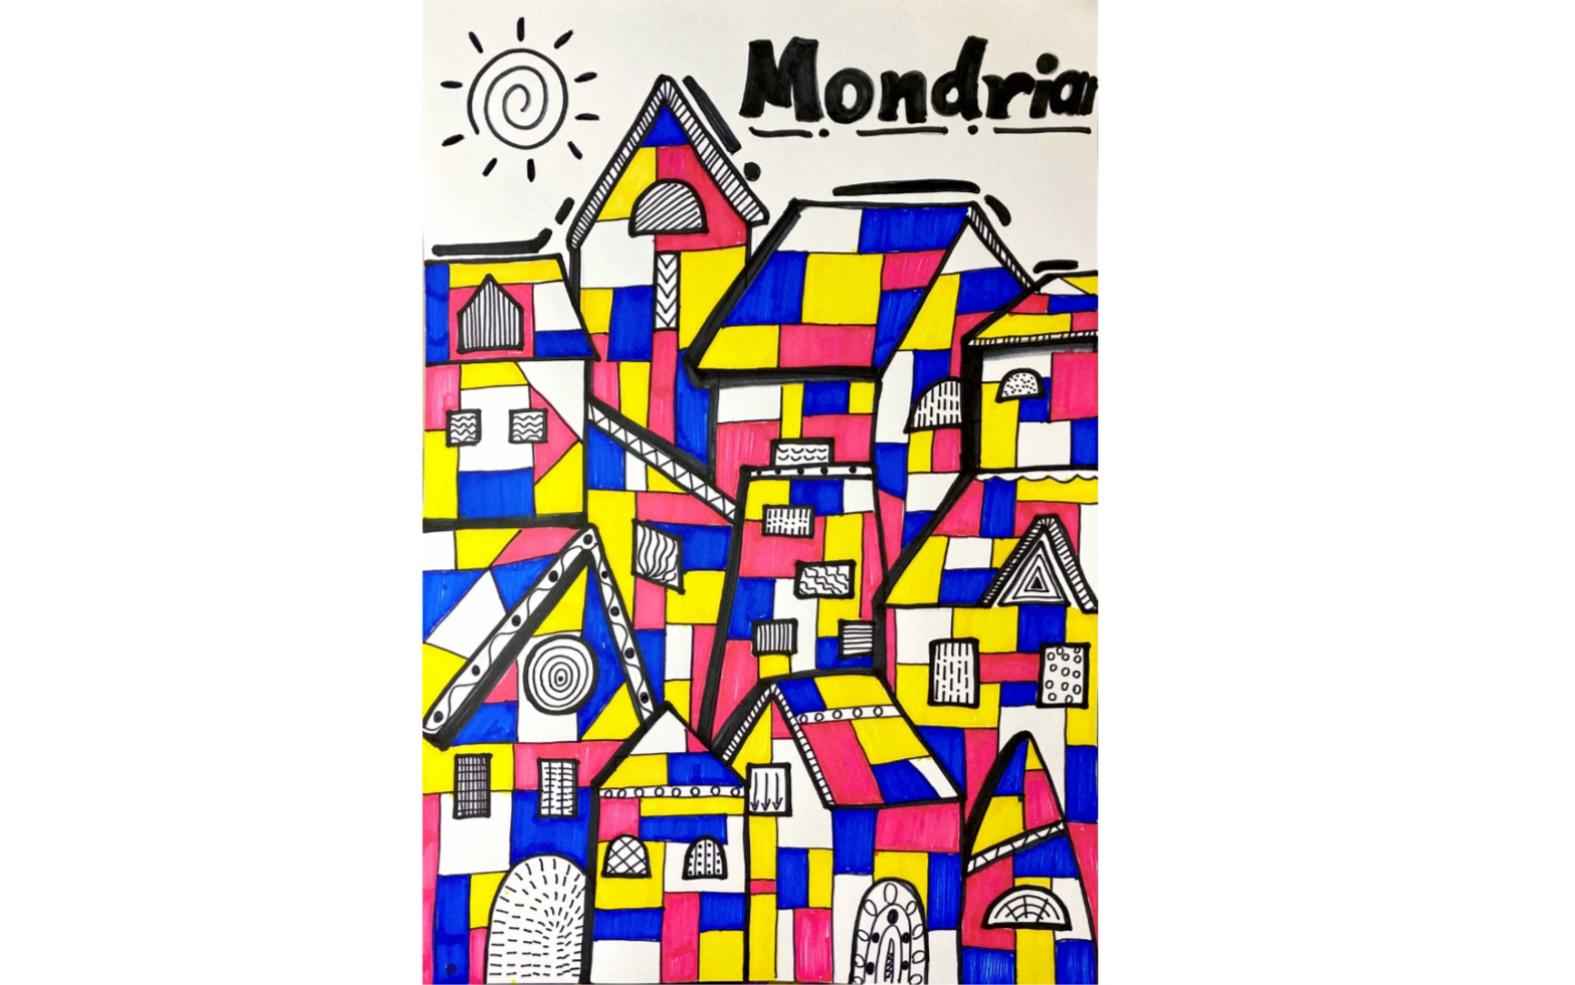 《蒙德里安的房子》创意画今天来认识格子里的现代艺术大师——蒙德里